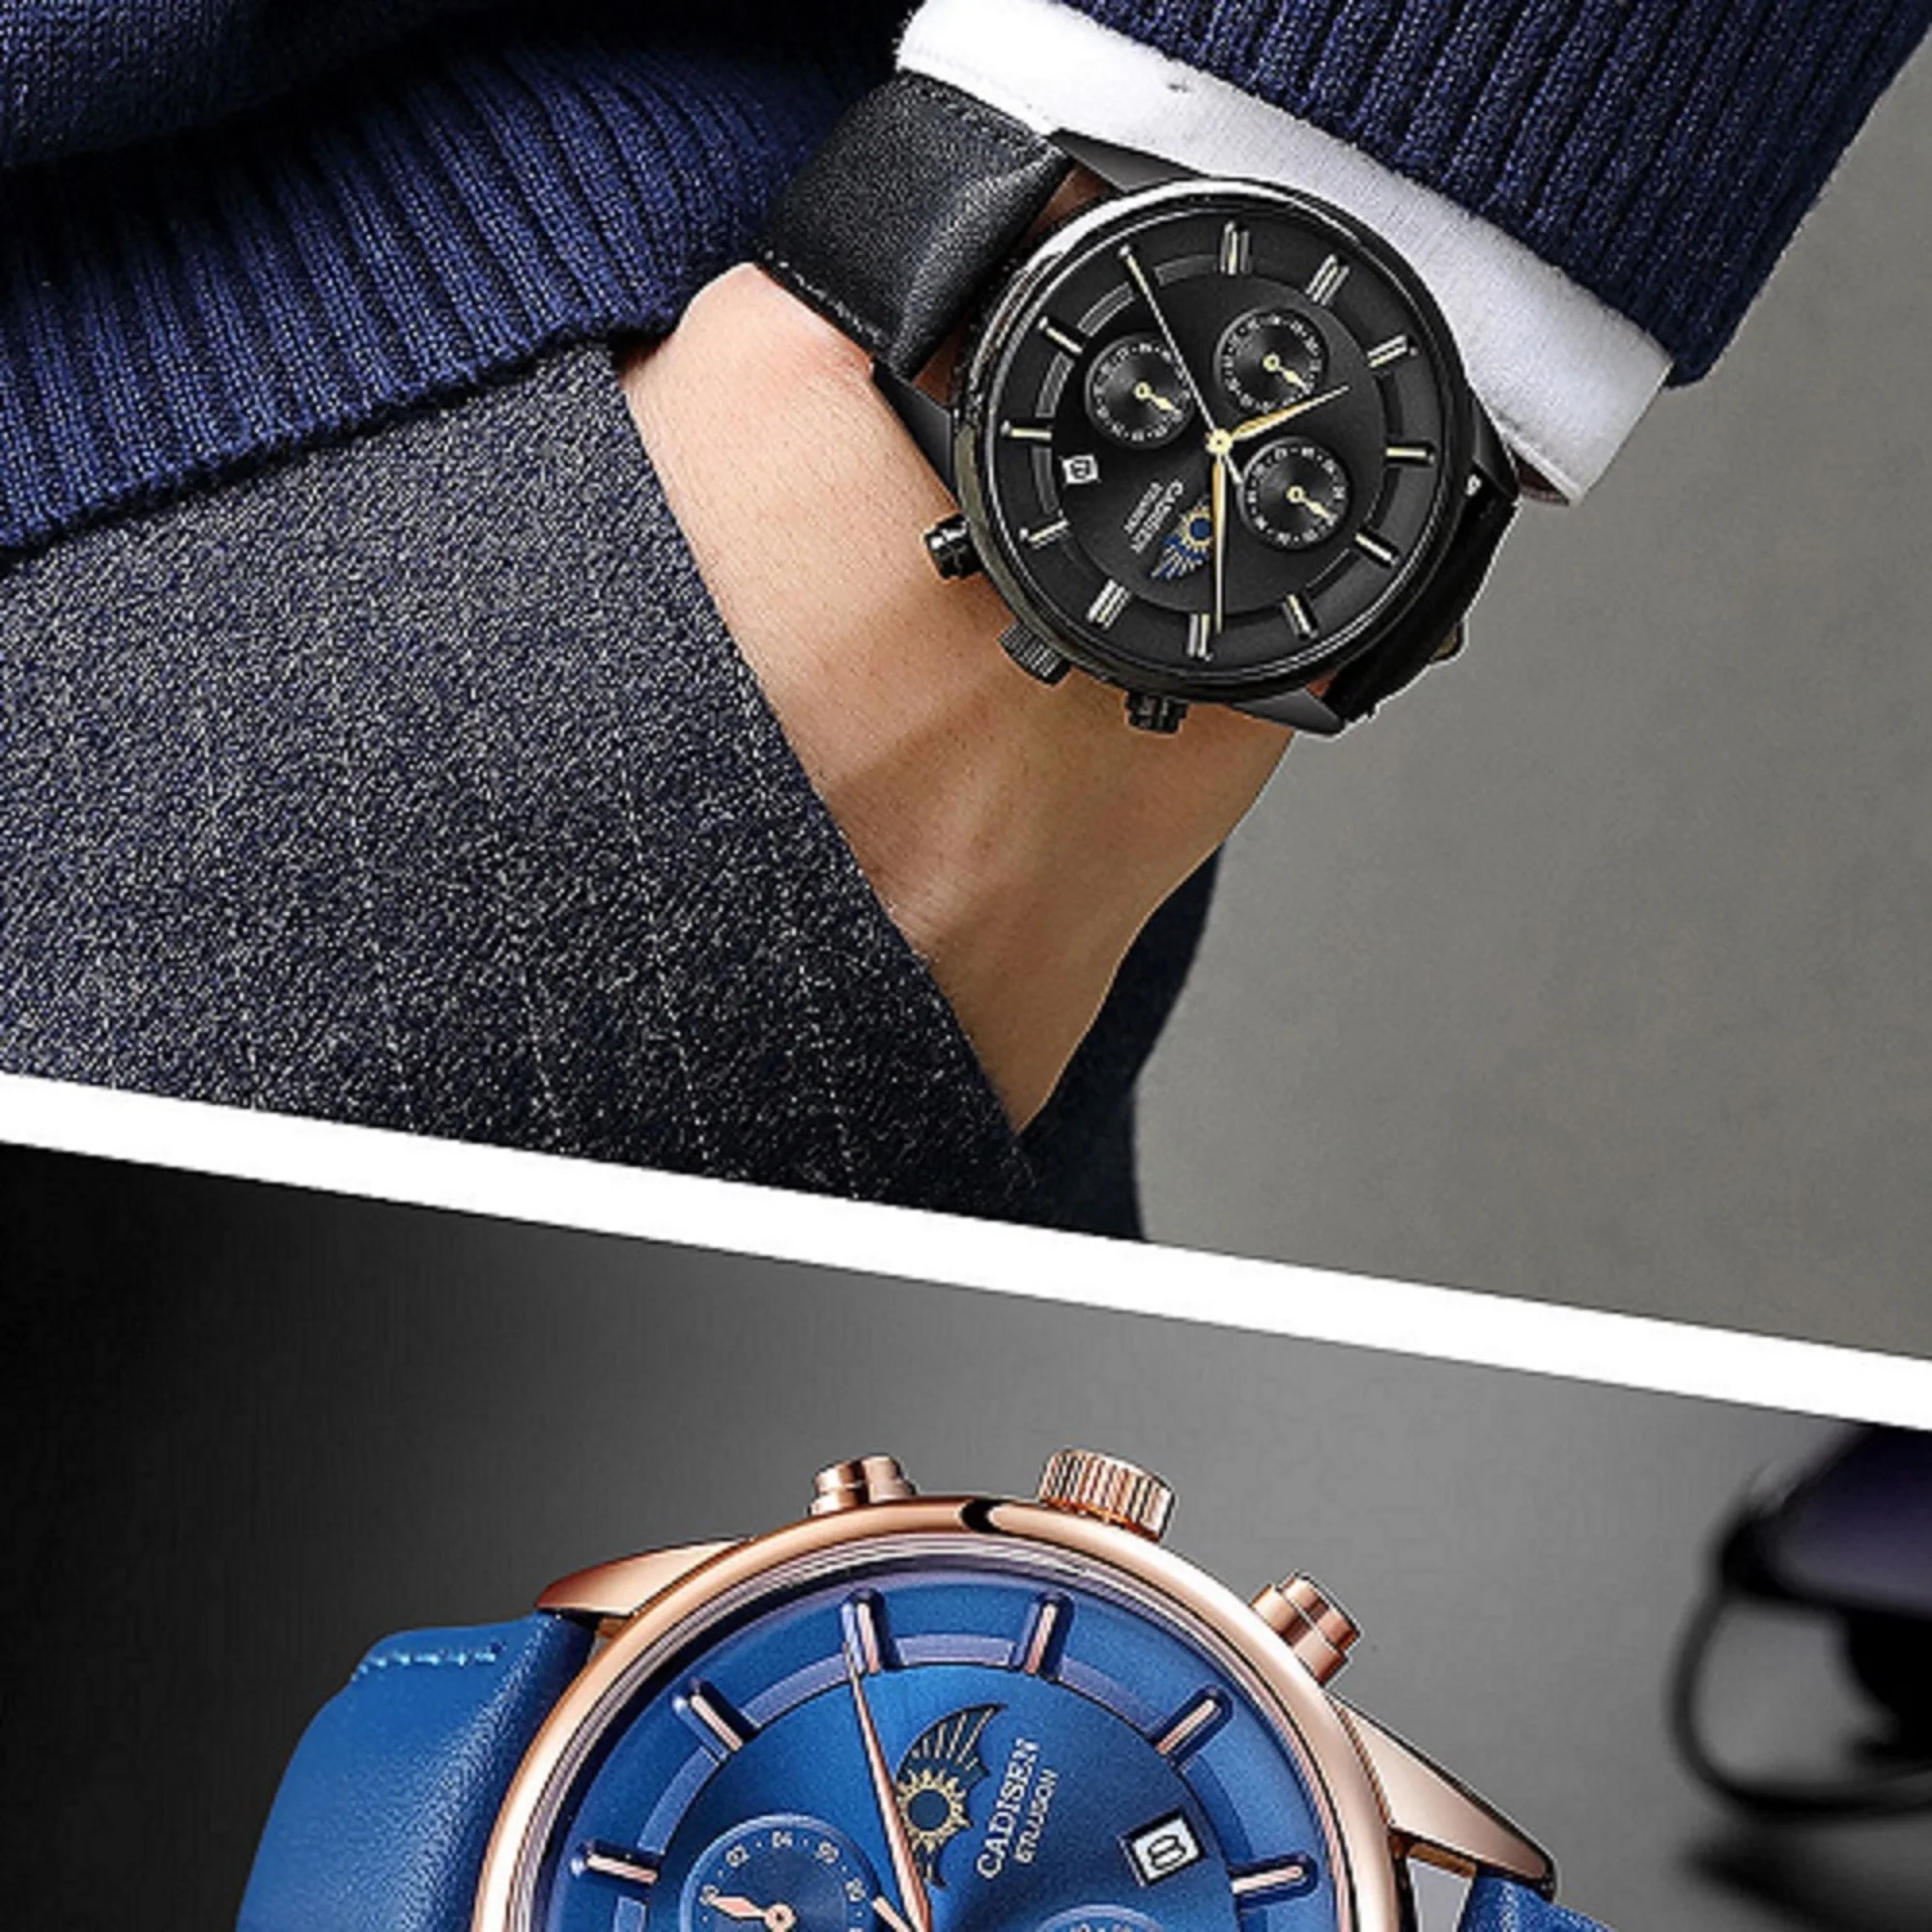 CADISEN мужские часы лучший бренд класса люкс мужские модные повседневные кожаные часы Кварцевые водонепроницаемые наручные часы Relogio Masculino